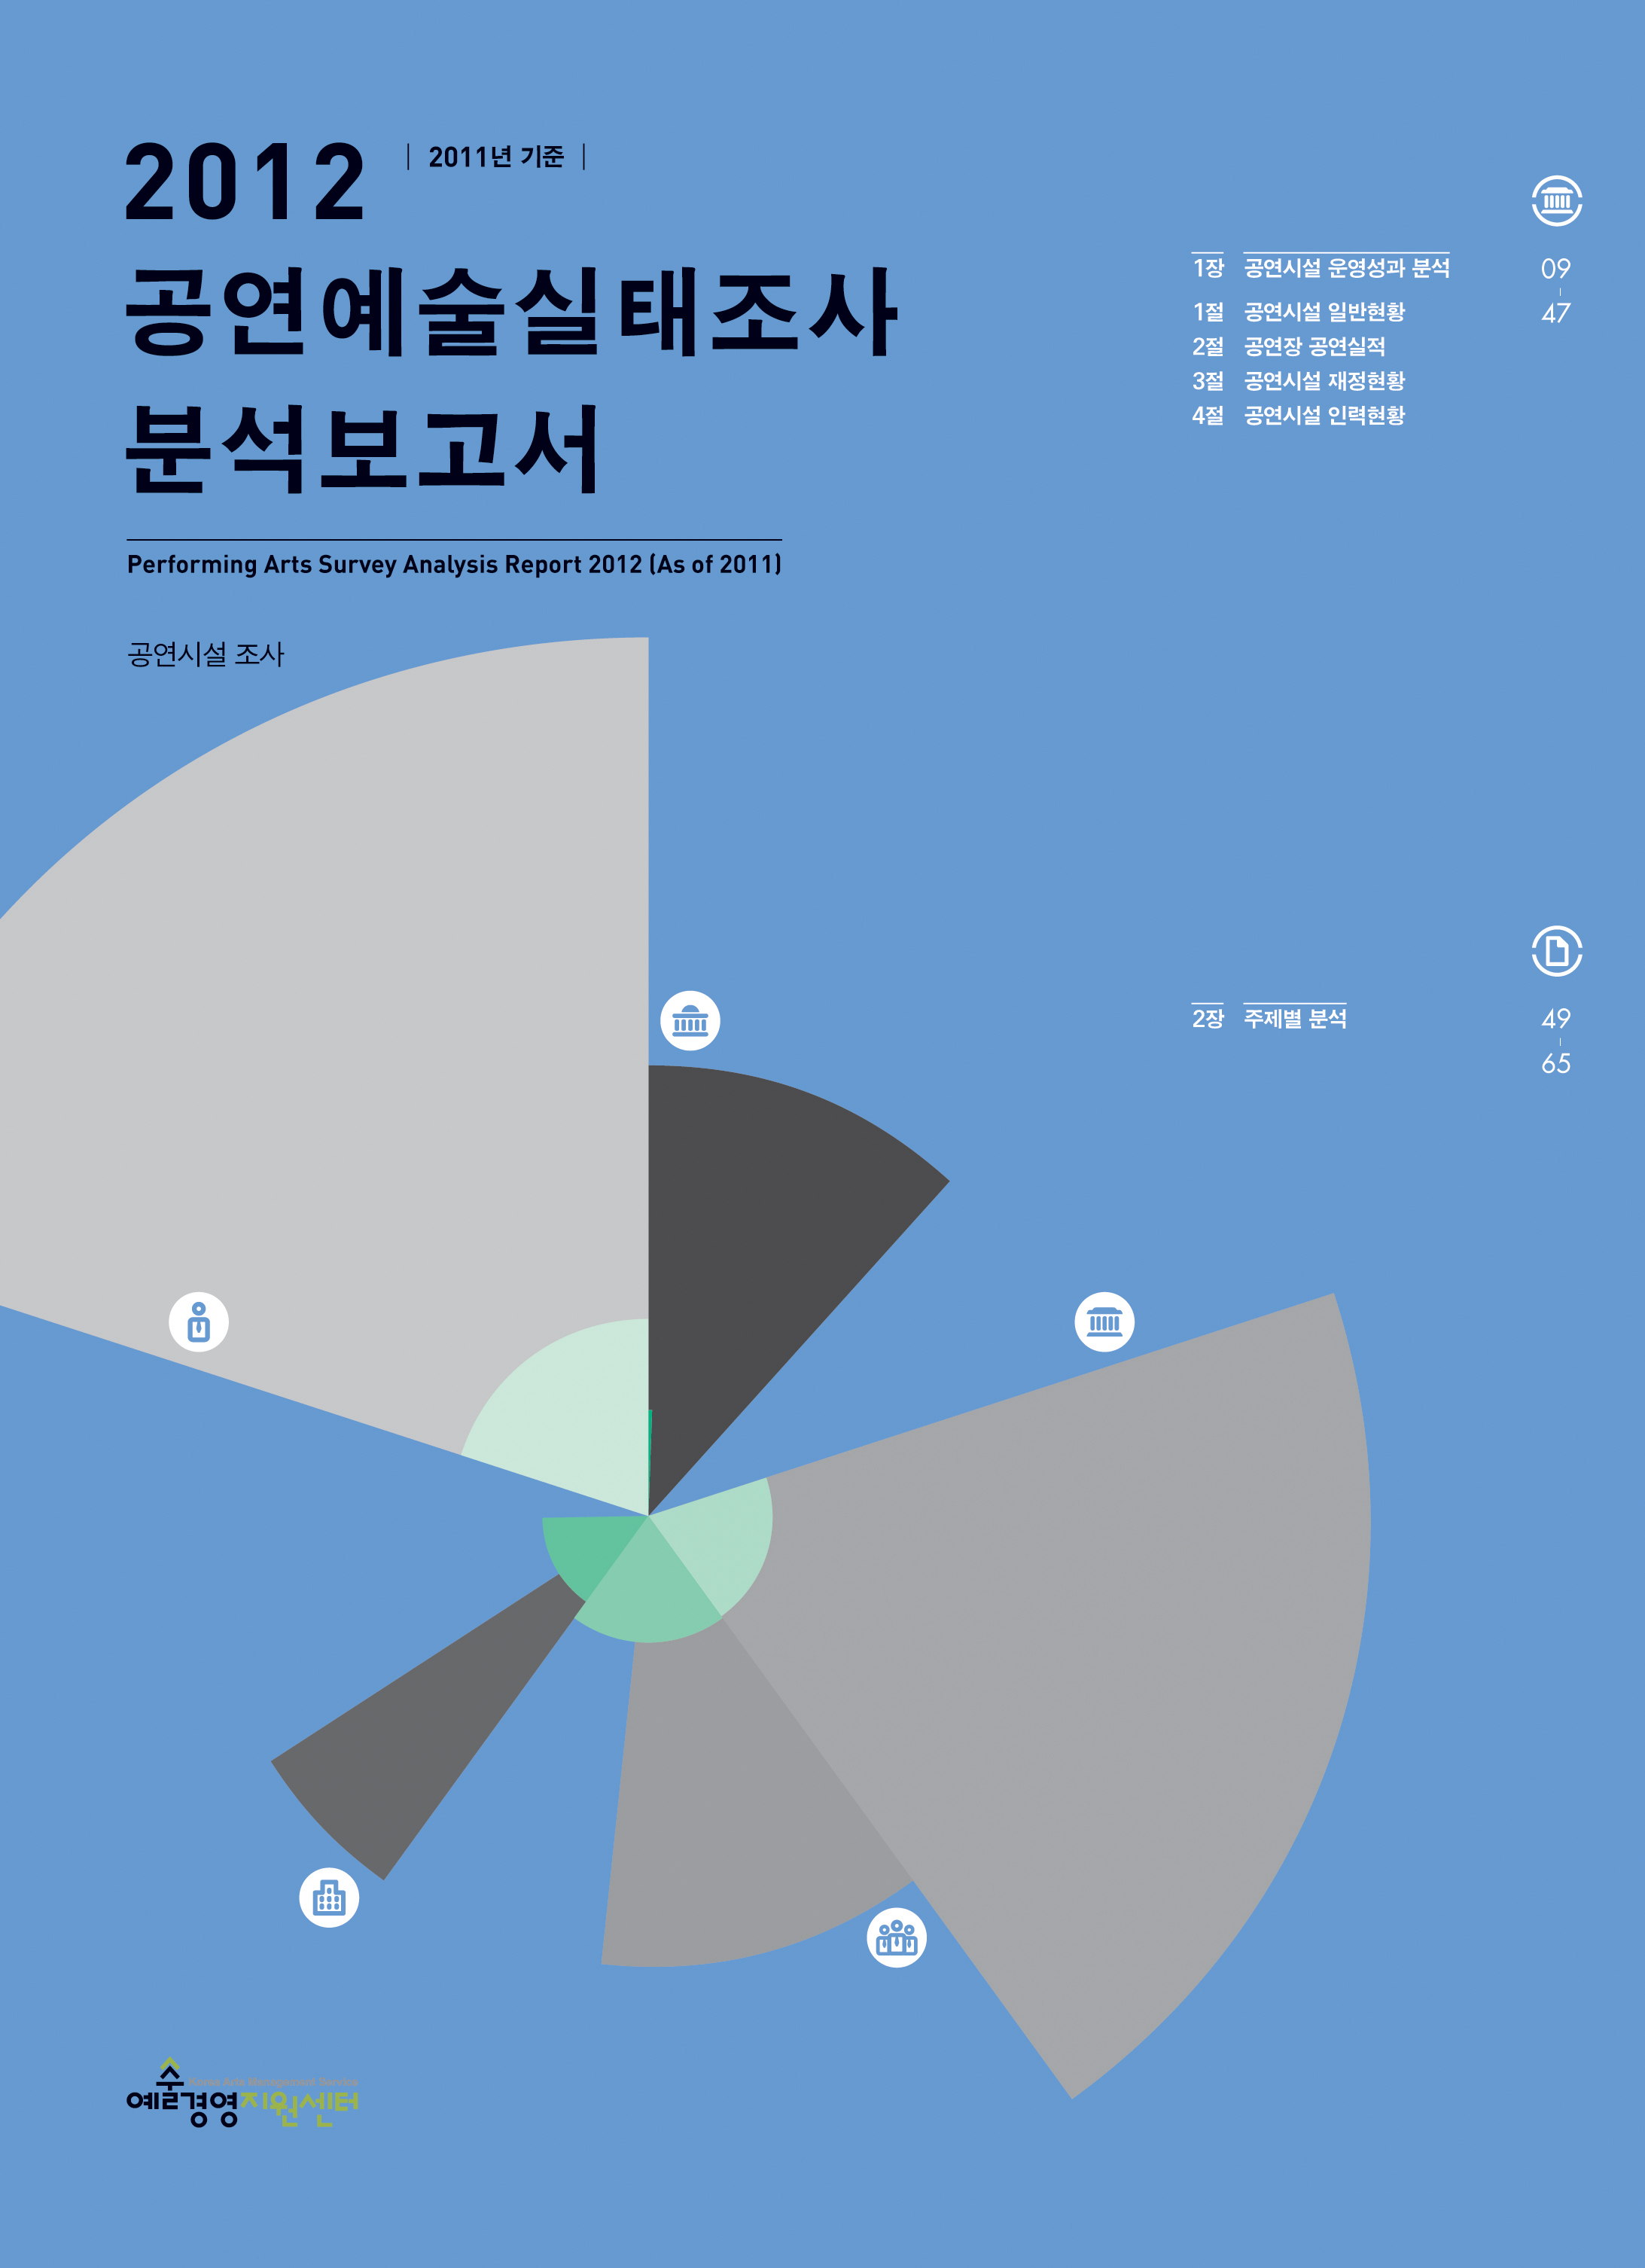 「2012 공연예술실태조사 분석보고서」(2011년 기준) 